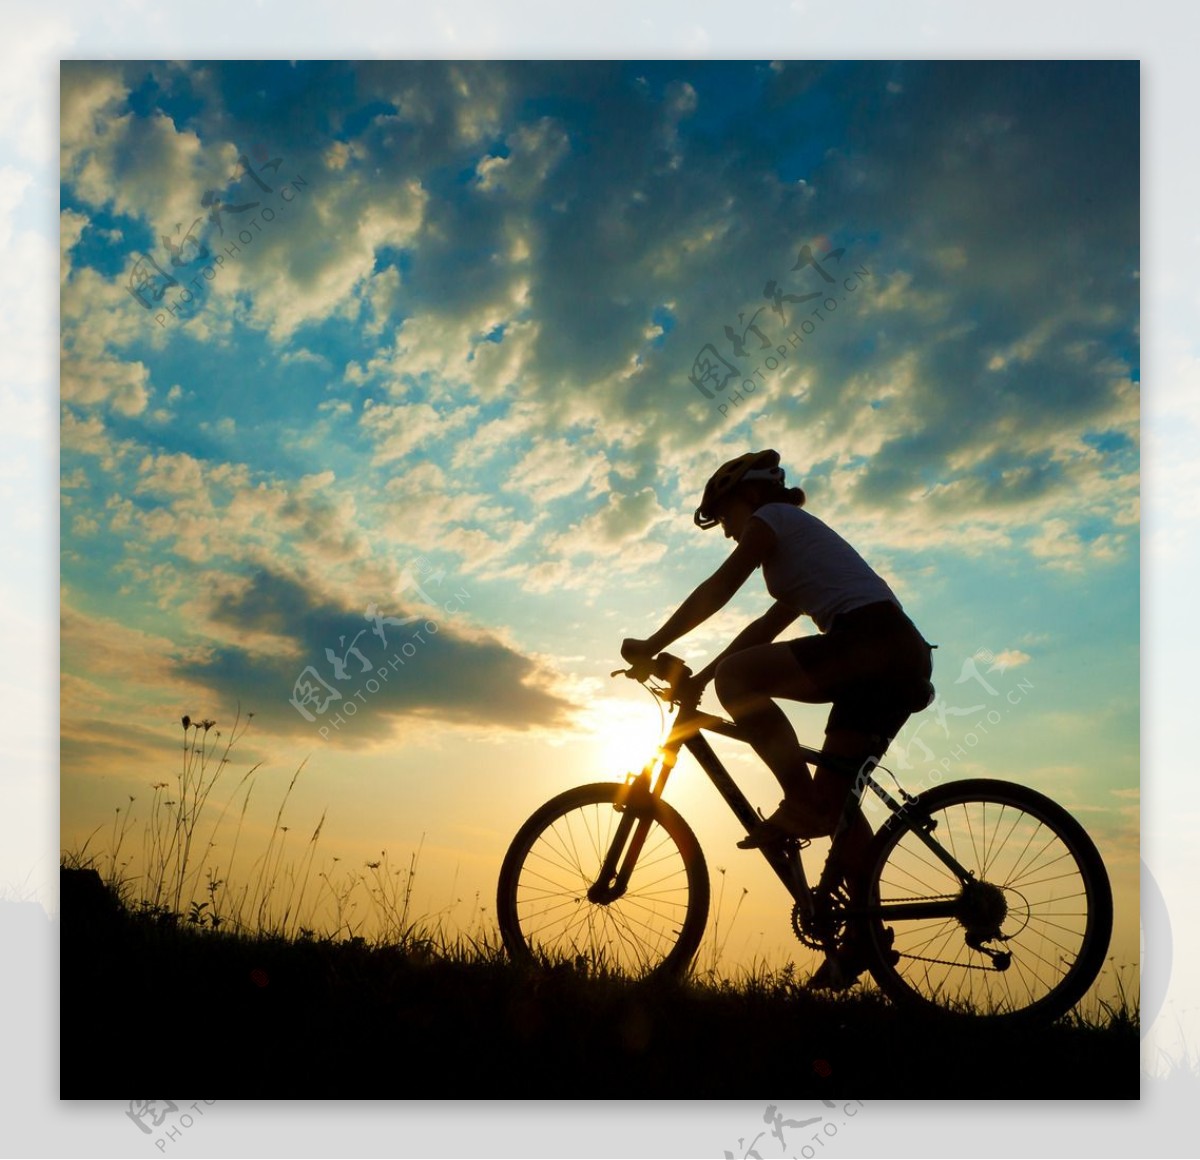 骑着自行车的人物45297_体育运动_人物类_图库壁纸_68Design